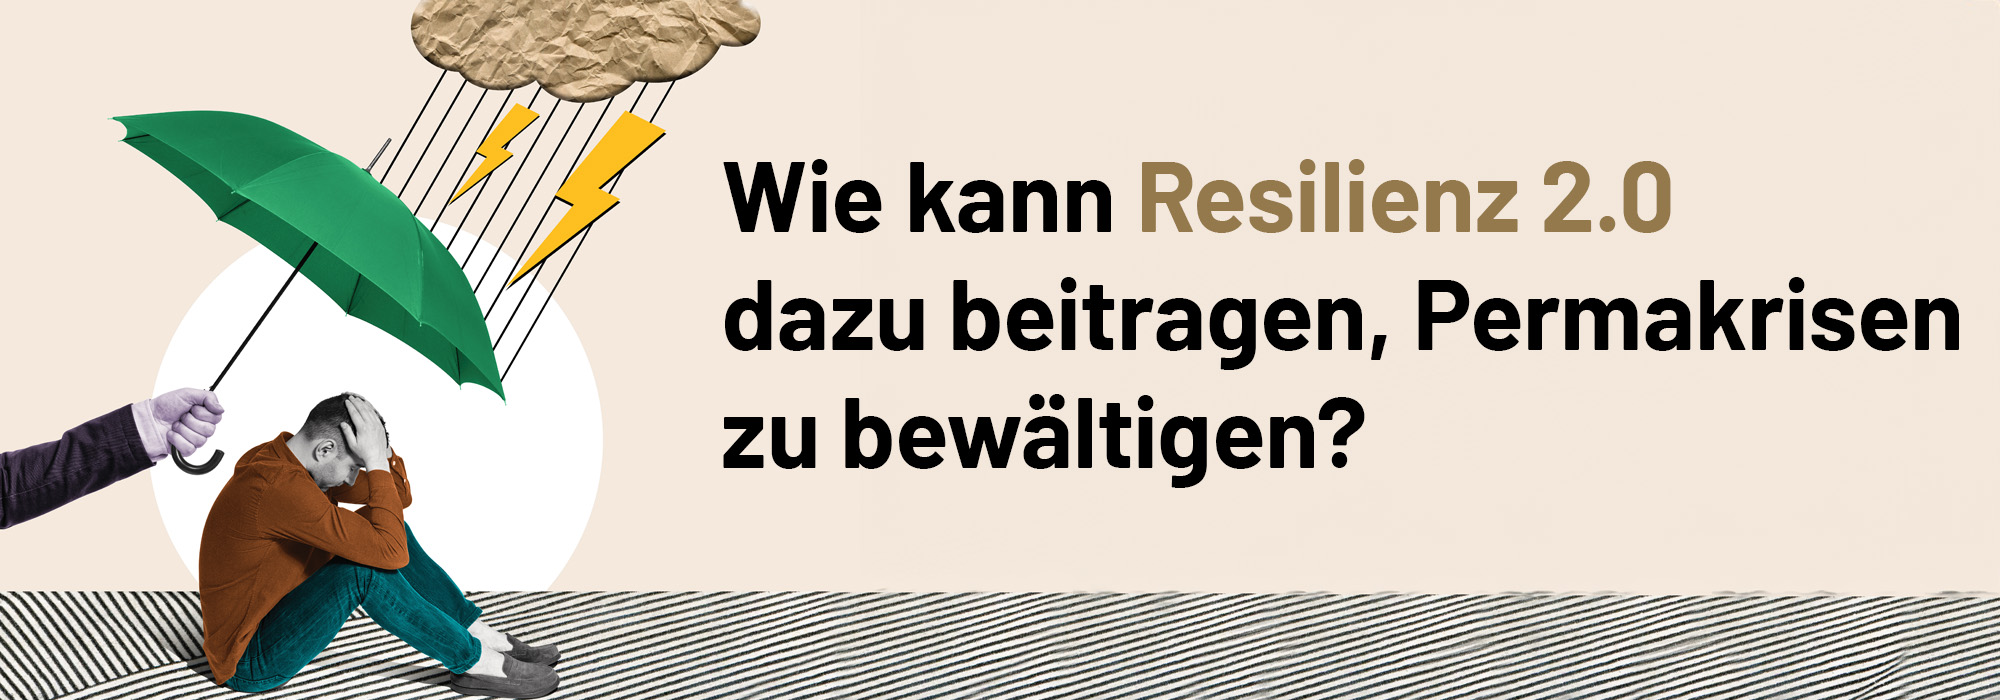 benschulz-partner-resilienz